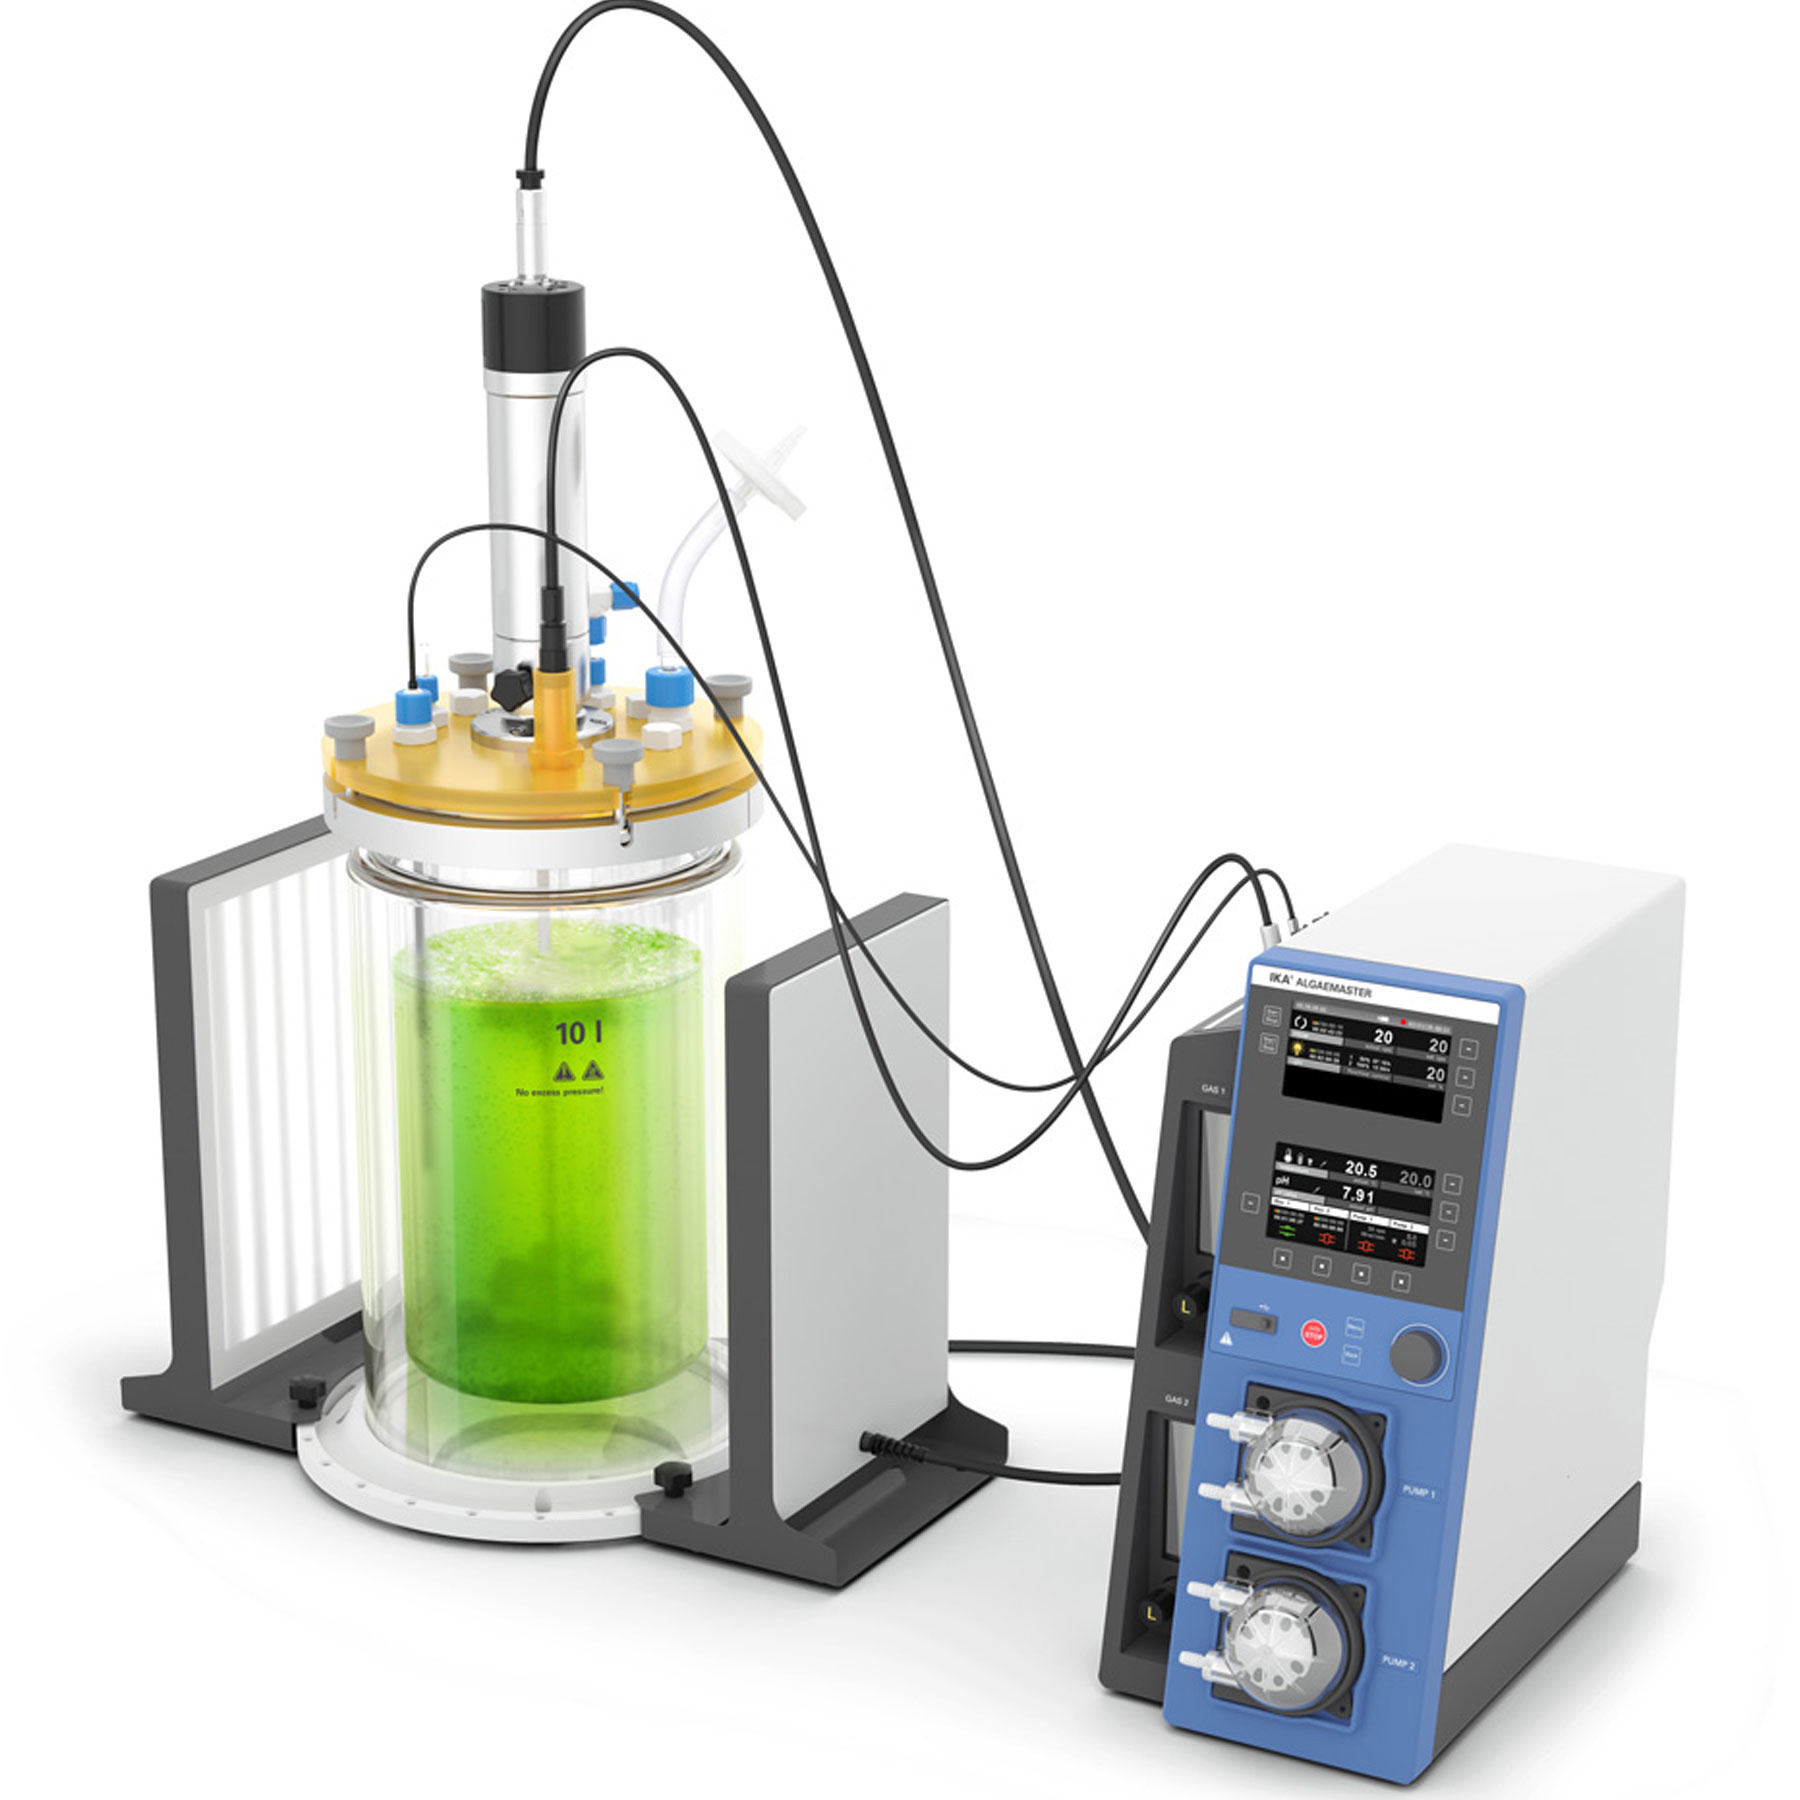 en-laboratory-analytic-devices-ika-photo-bioreactor-algaemaster-10-control_2